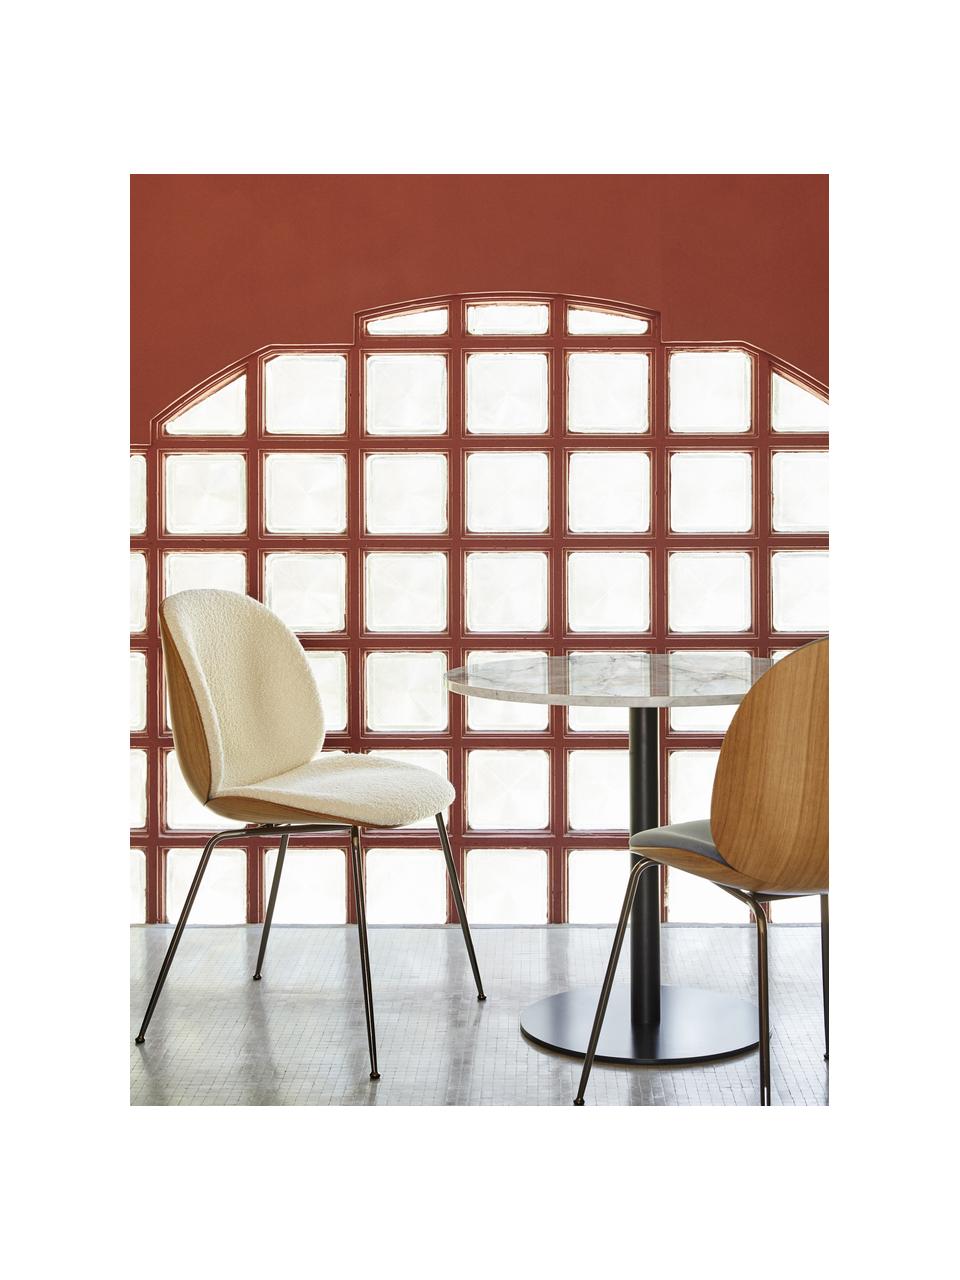 Krzesło tapicerowane Bouclé Beetle, Tapicerka: Bouclé (100% poliester), Nogi: stal powlekana, Bouclé biały, drewno dębowe, czarny błyszczący, S 56 x G 58 cm